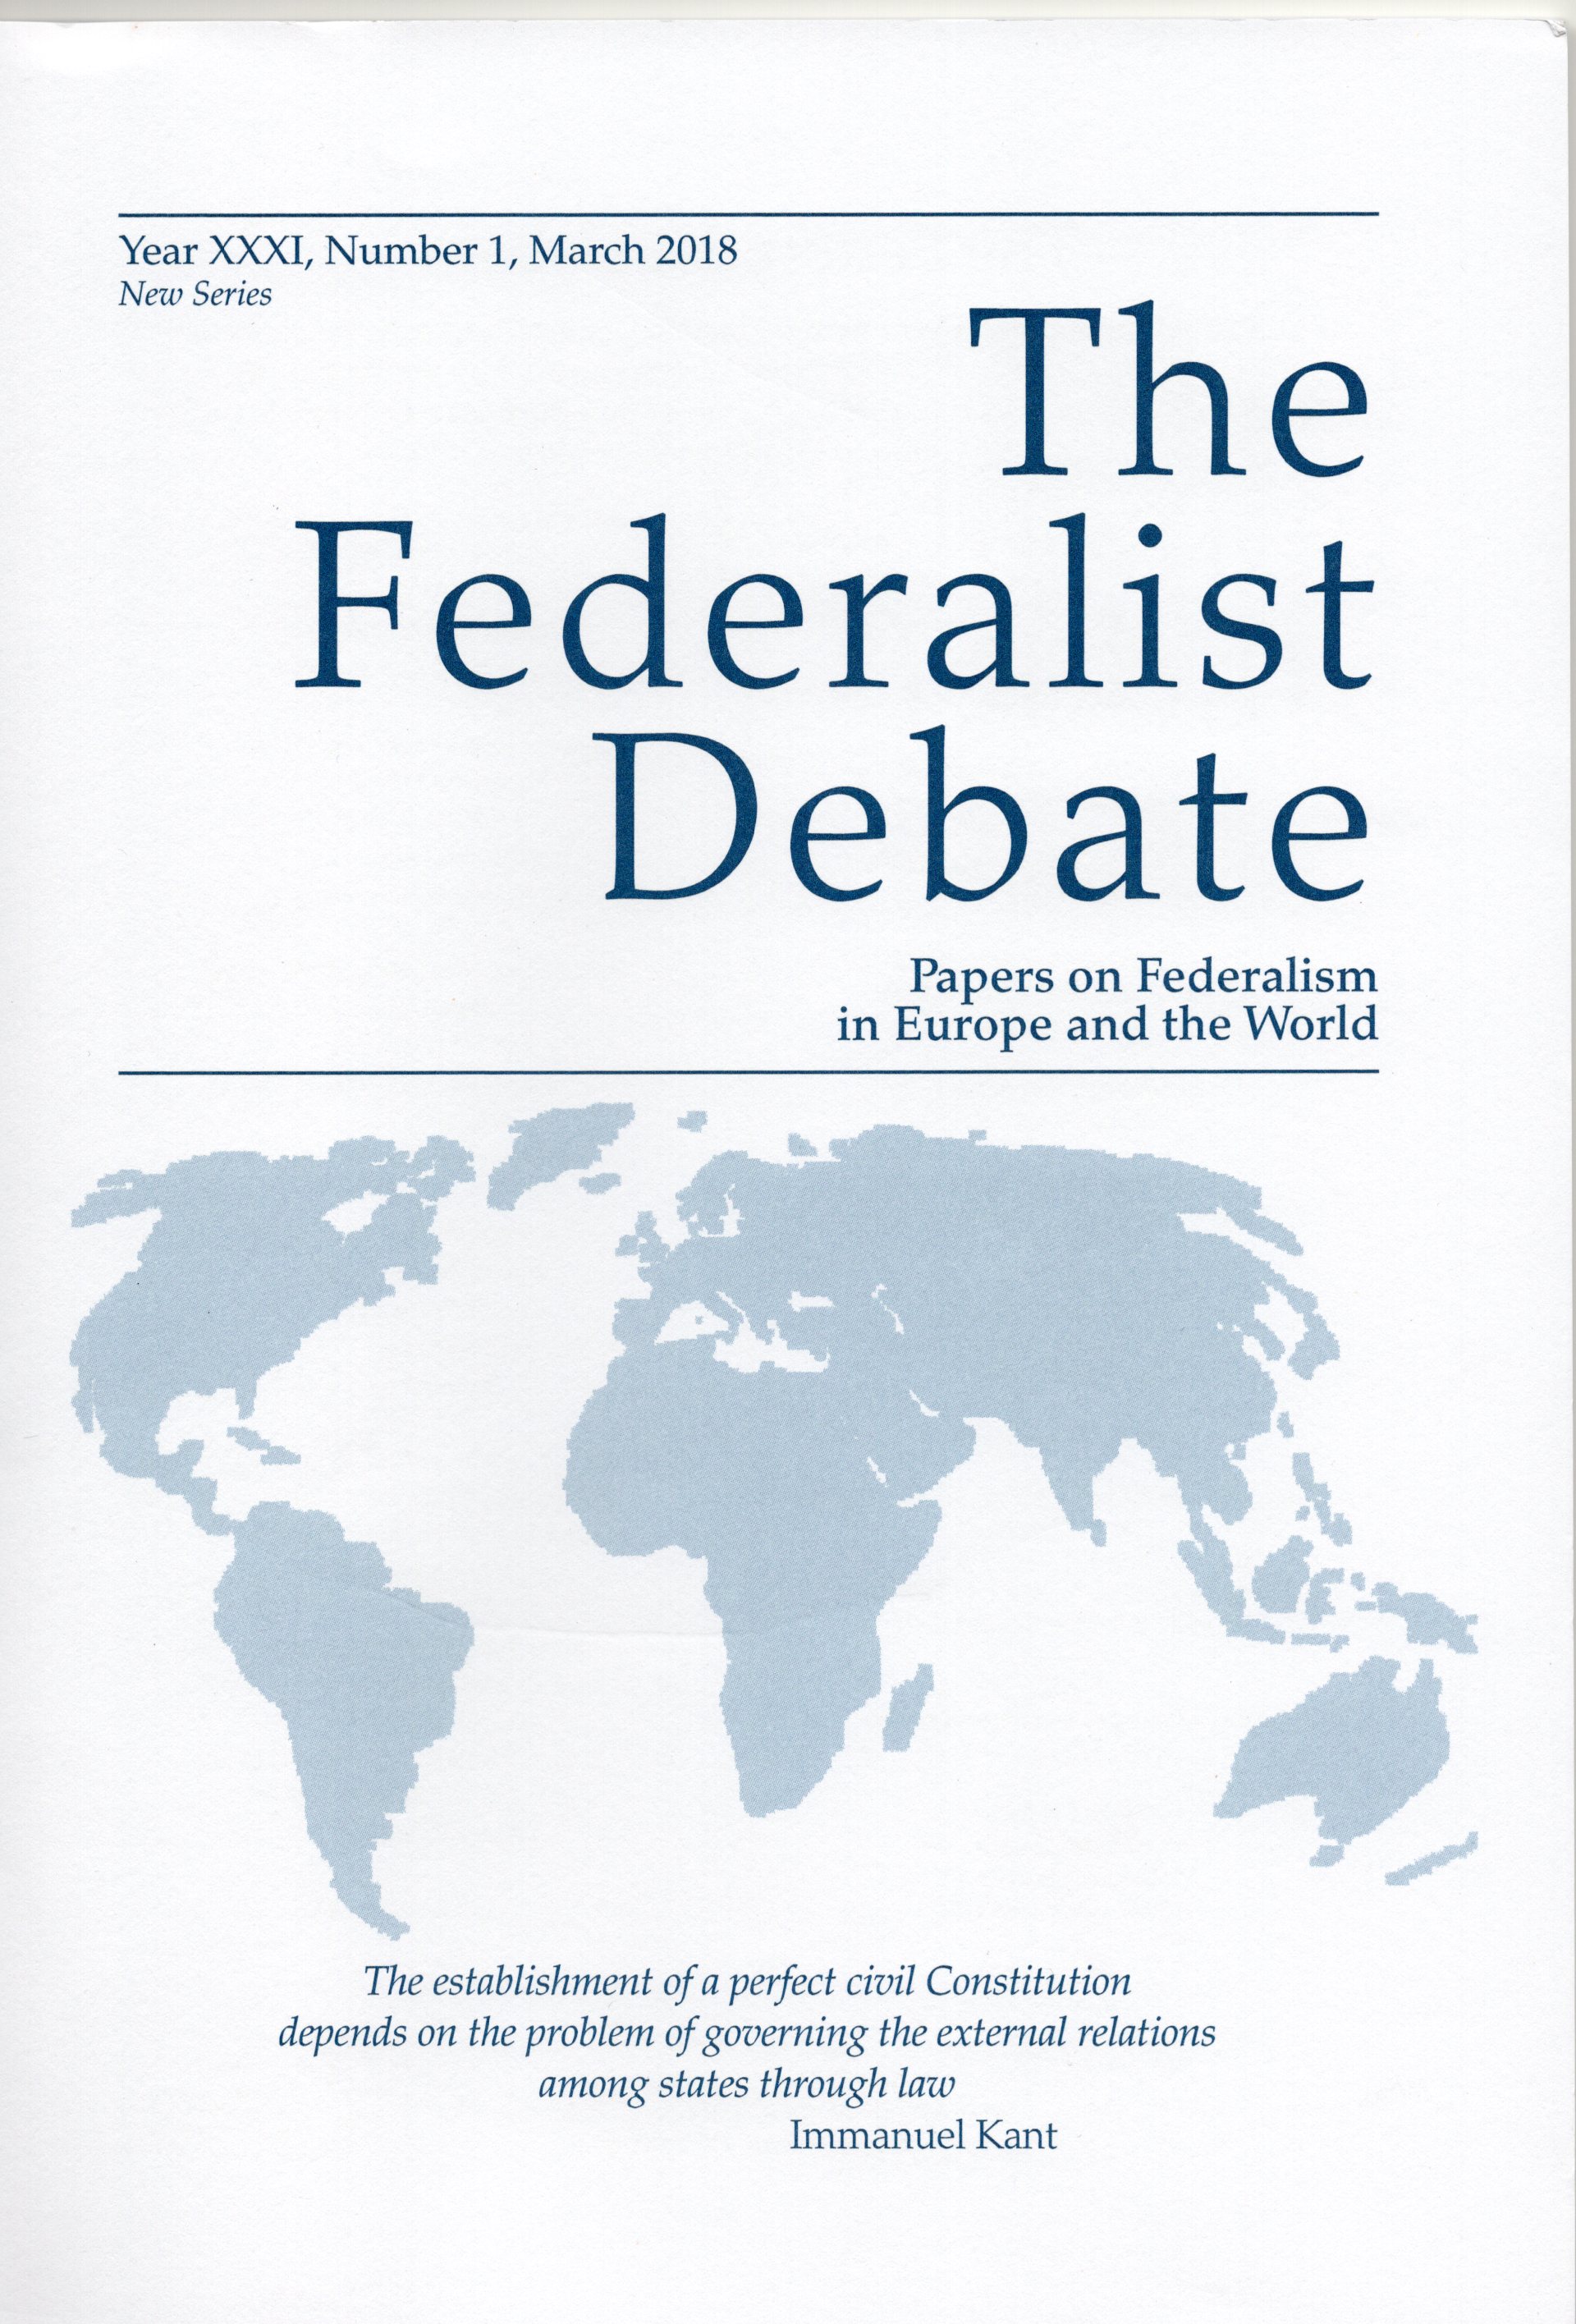 Imagen de portada de la revista The Federalist Debate